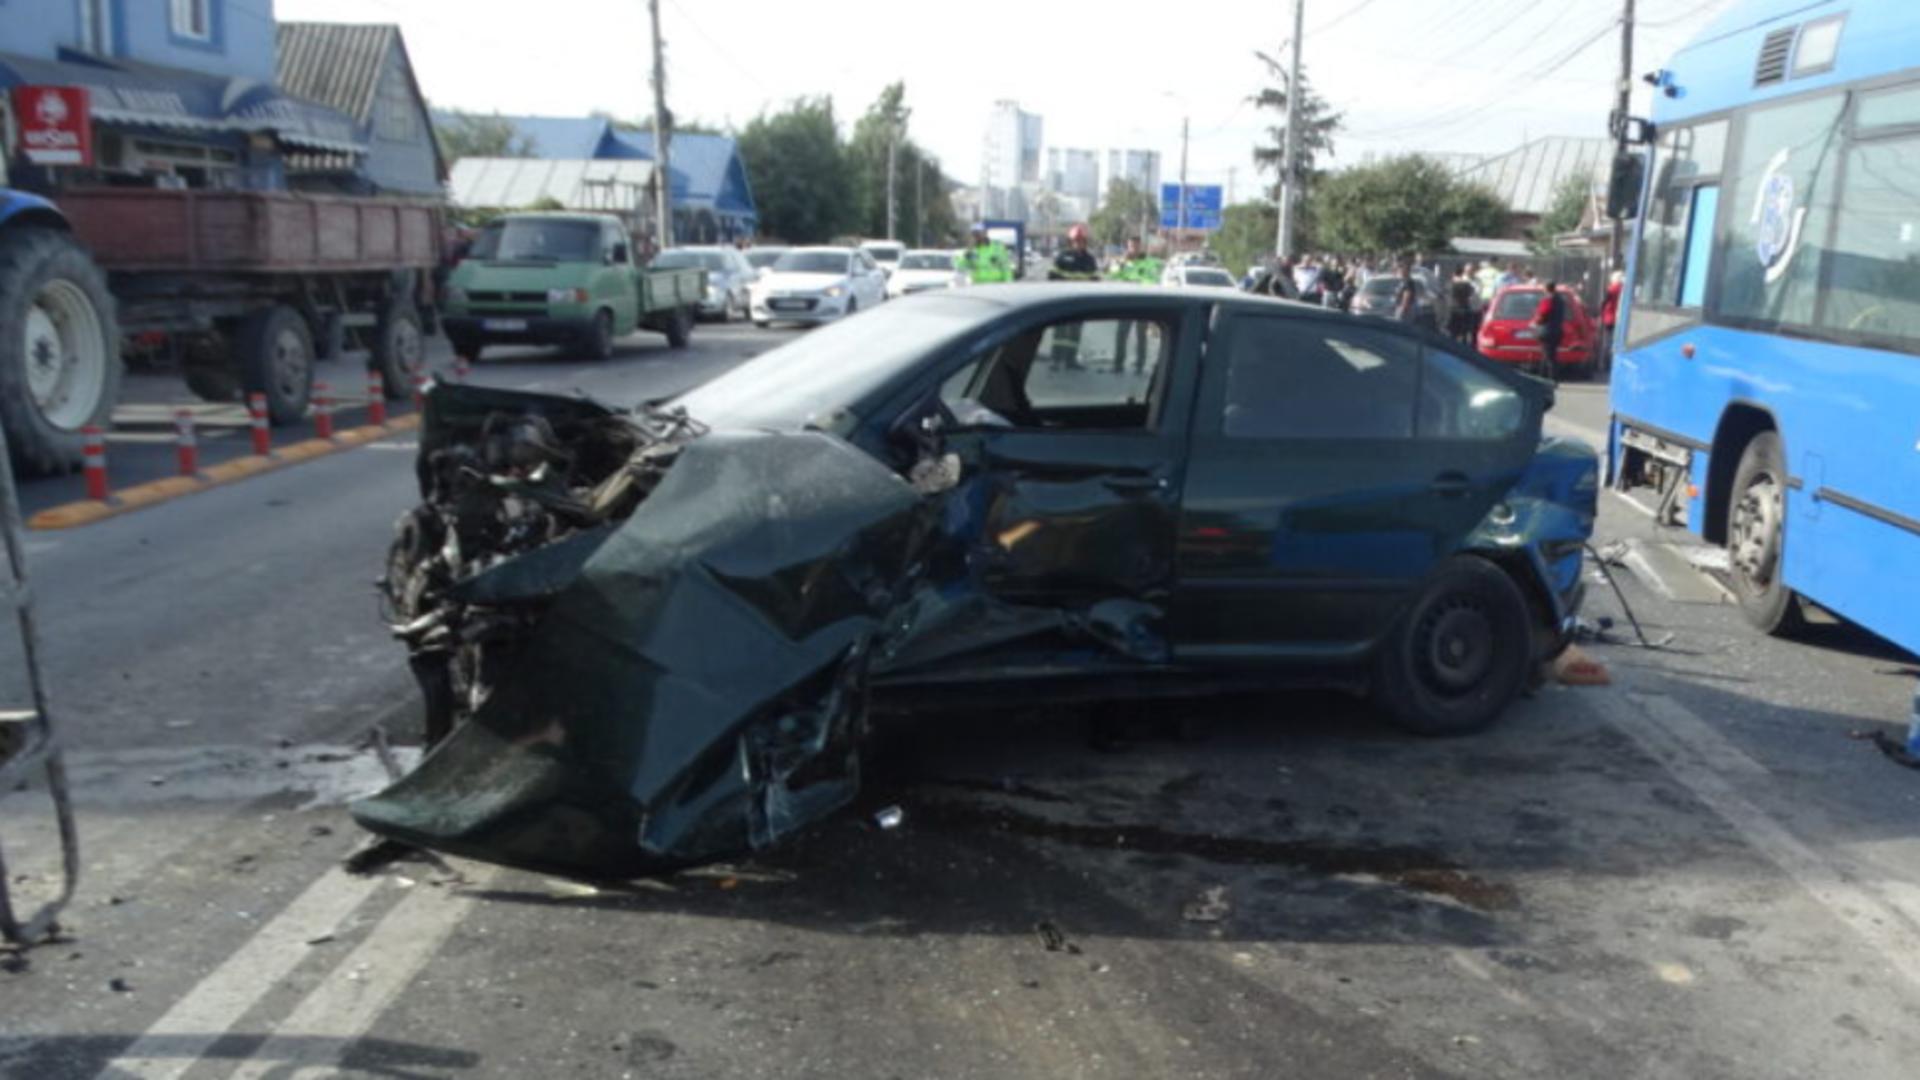 Primele imagini de la accidentul în lanț cu 5 mașini și un autobuz din Buzău, soldat cu 2 răniți – Totul s-a petrecut în câteva secunde – VIDEO